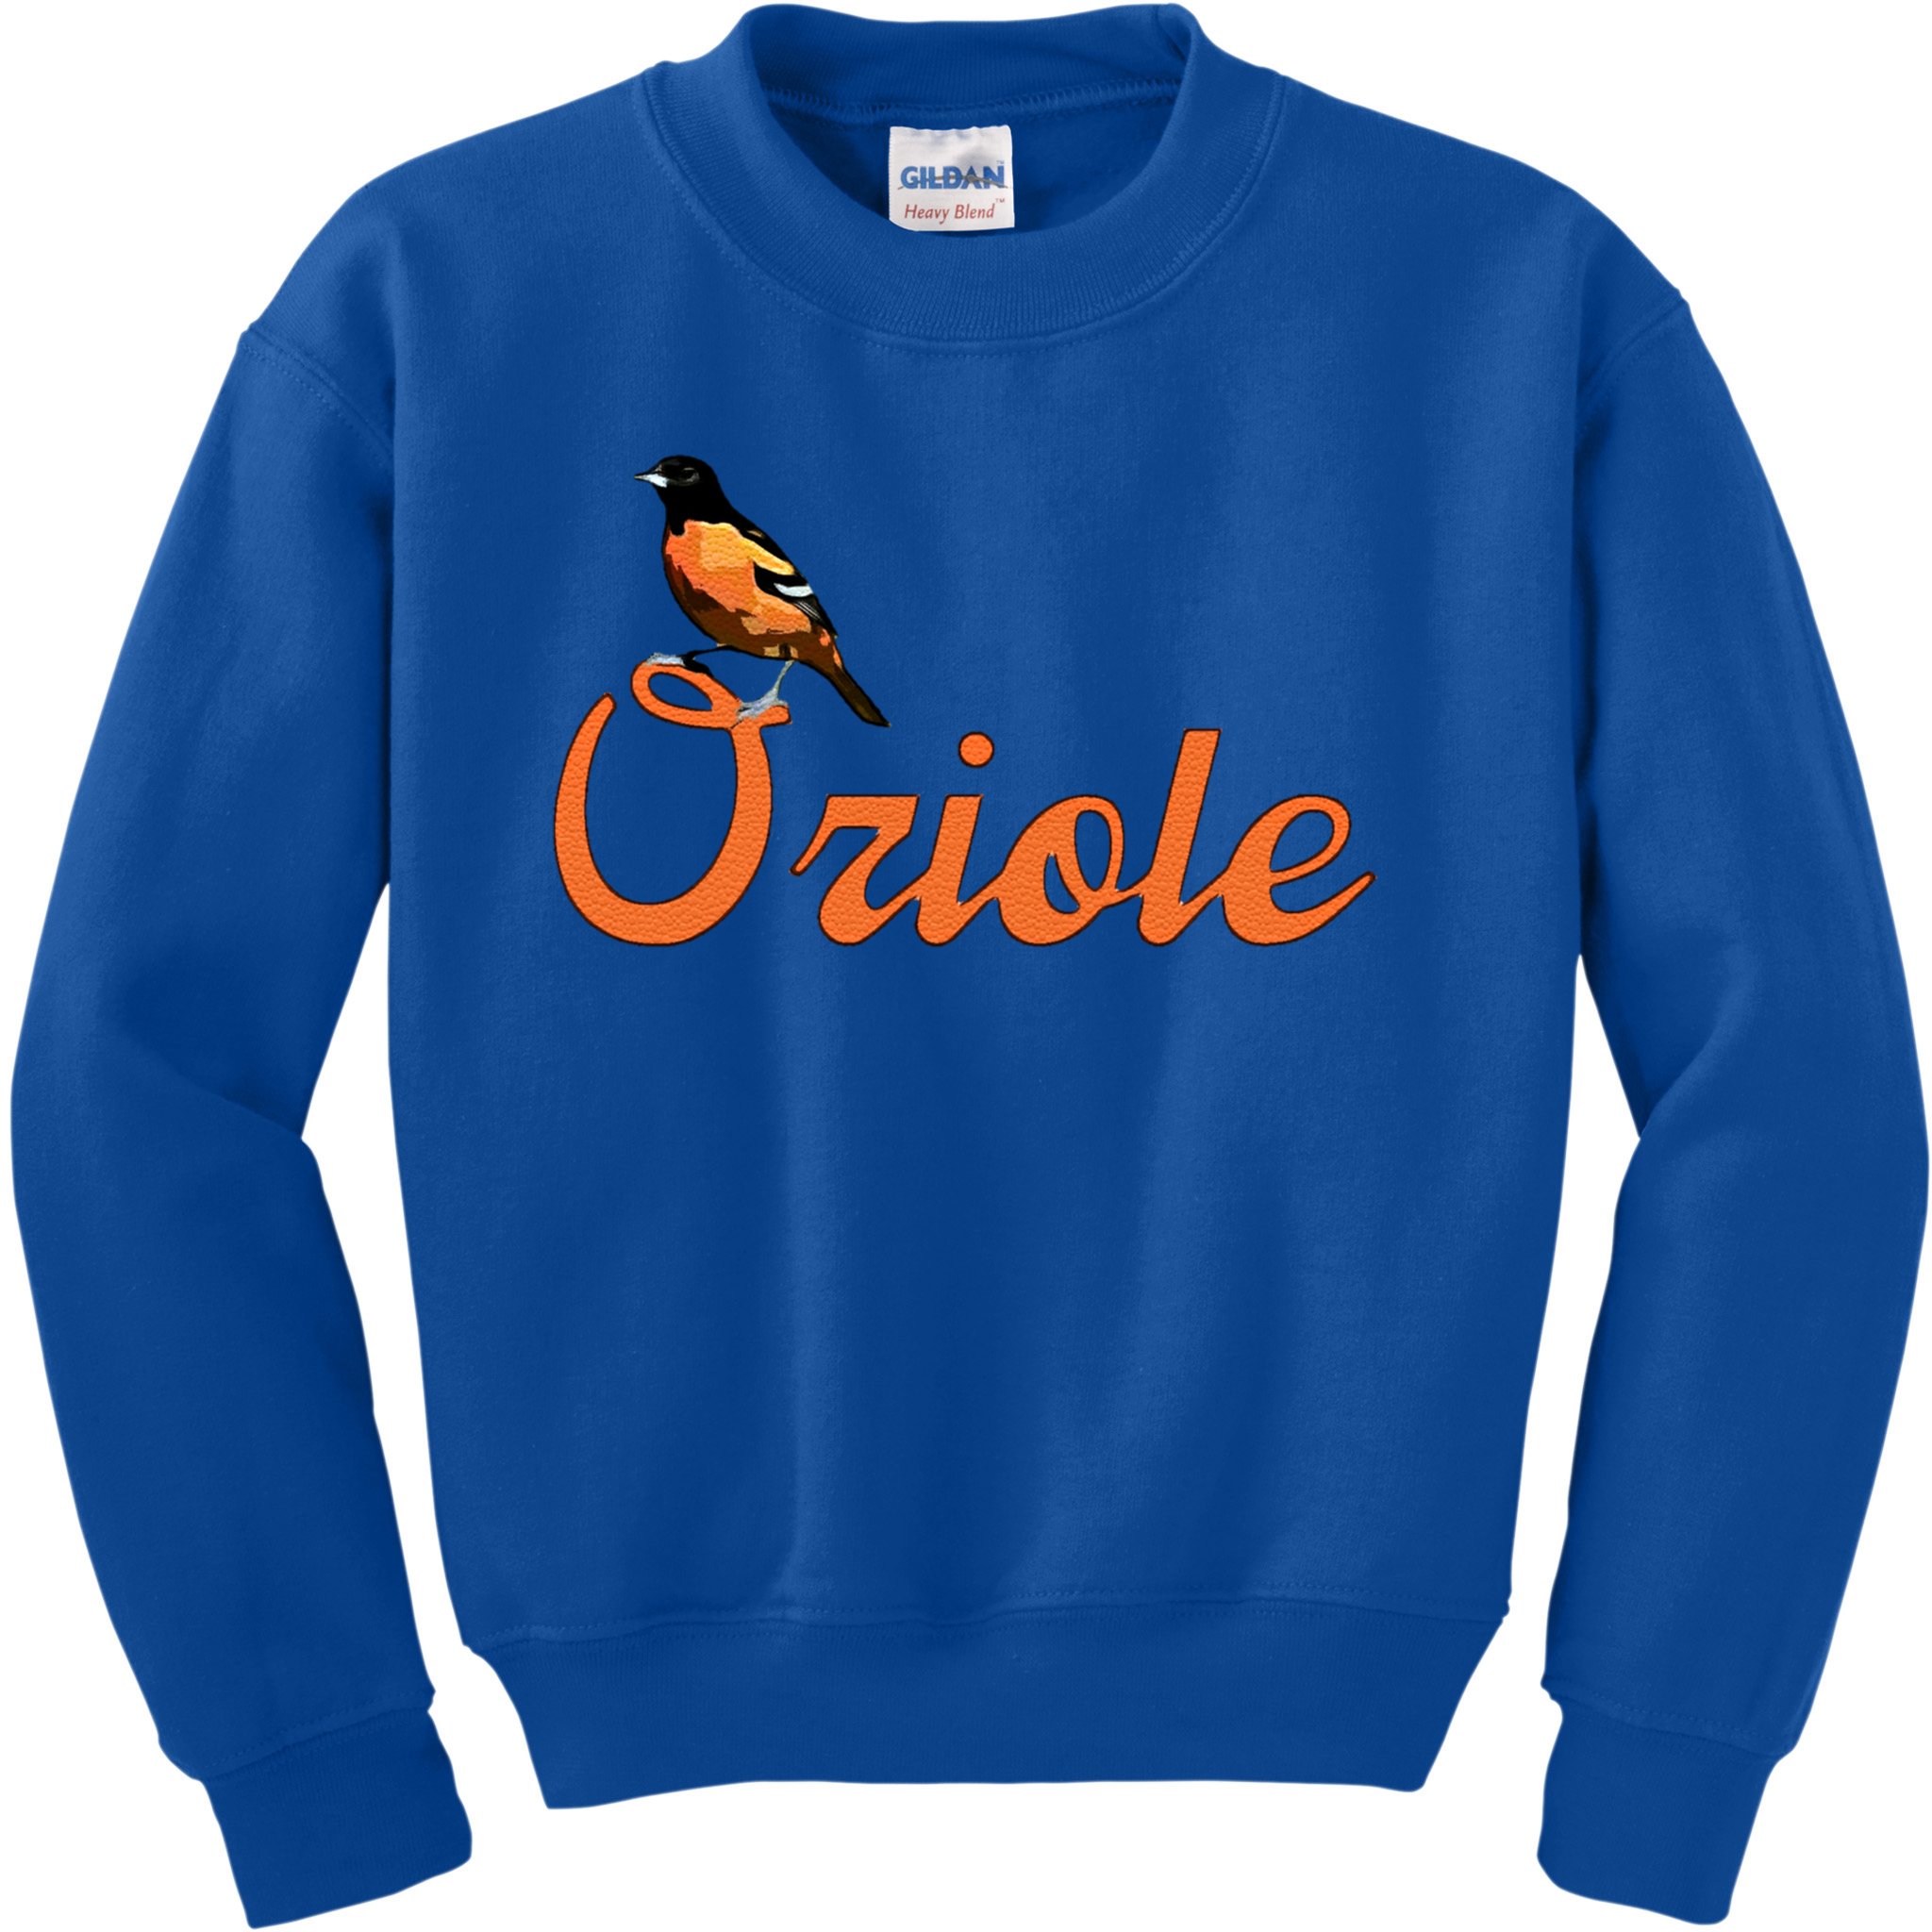 Teeshirtpalace Vintage Oriole Bird Baltimore Favorites Gift Kids Sweatshirt